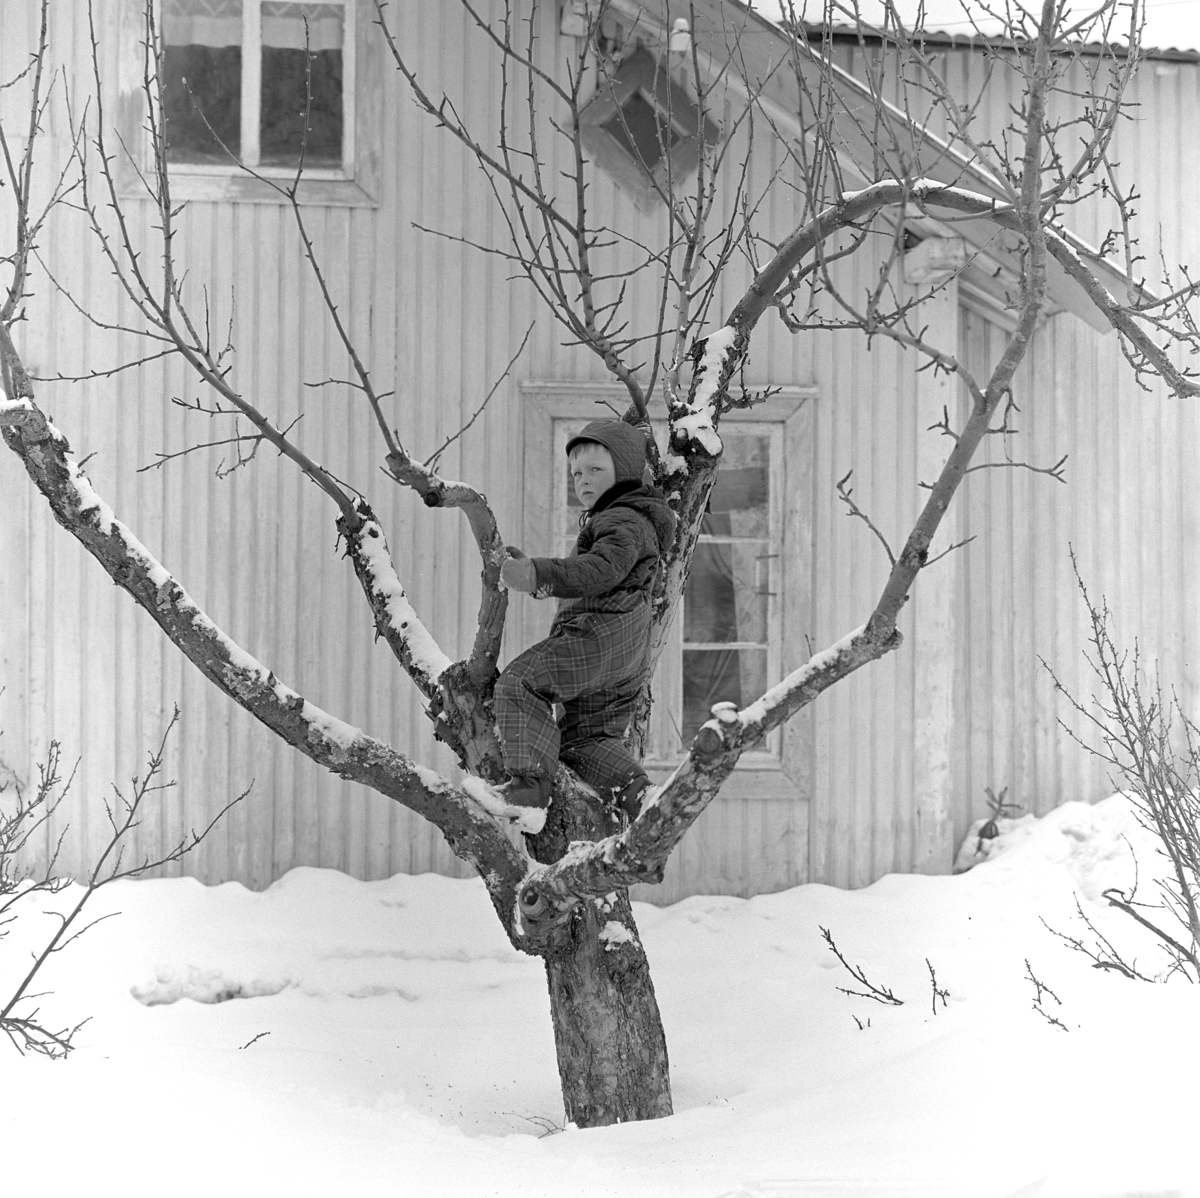 Dokumentasjon av griseslakting i 1977, på Lunde i Gaupen, Ringsaker. Bygdeslakter. En ung gutt klatrer i en apall, epletre. Sosialisering. Deltar i slaktinga.  Bygdeslakter Johs. Rosenborg.